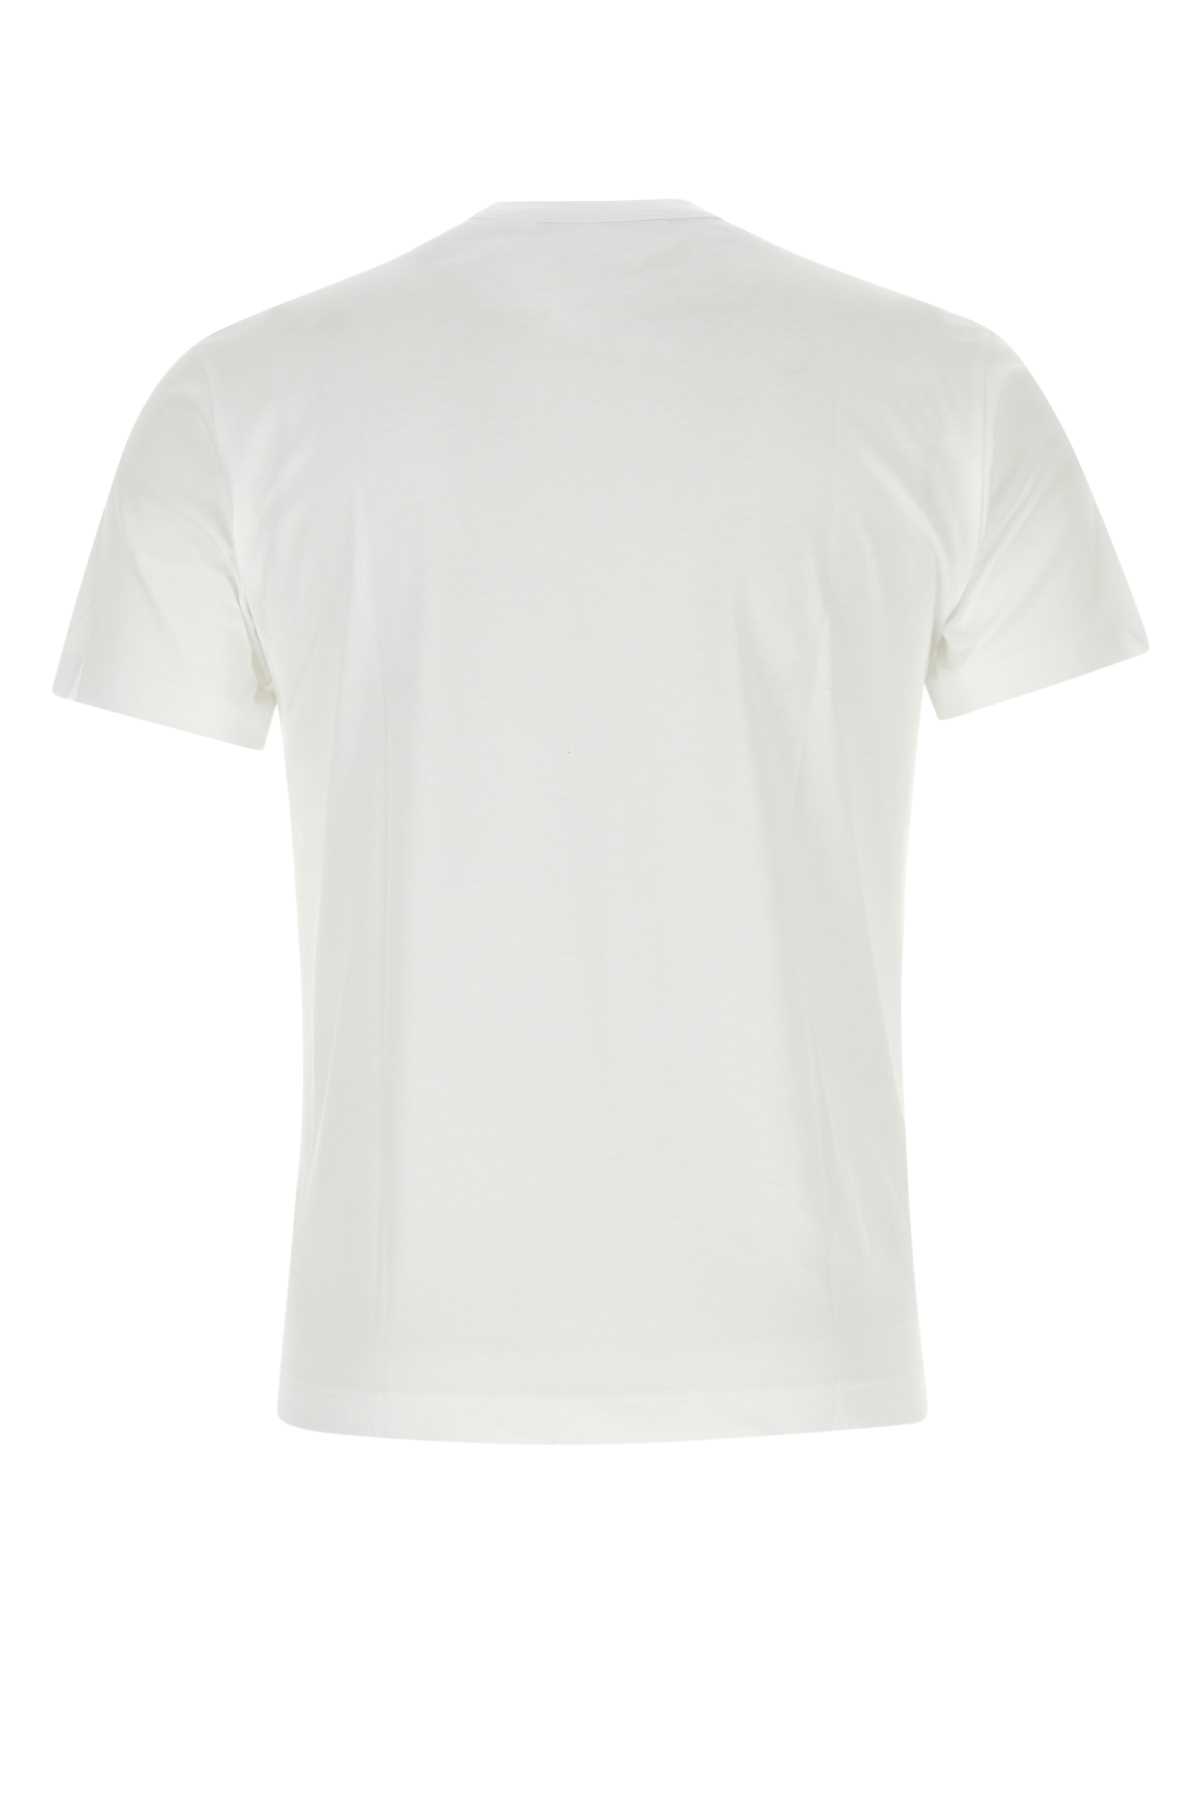 Comme Des Garçons White Cotton T-shirt